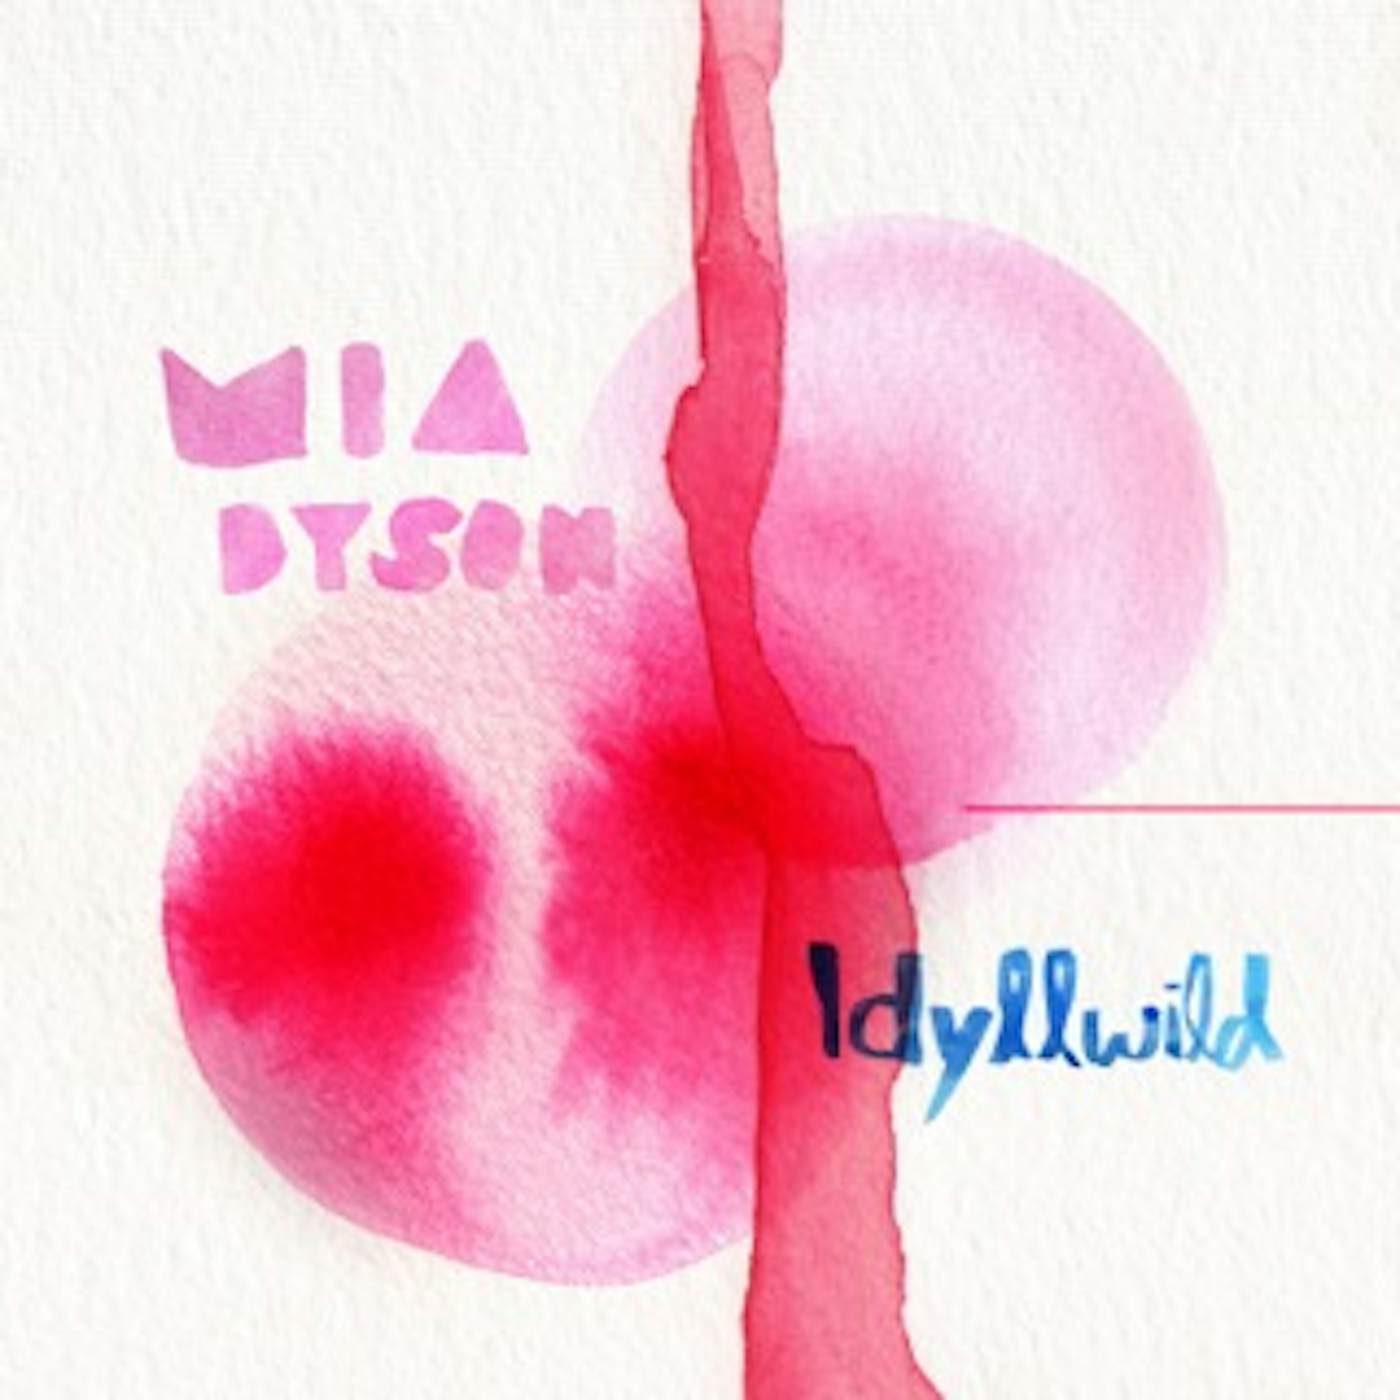 Mia Dyson Idyllwild Vinyl Record